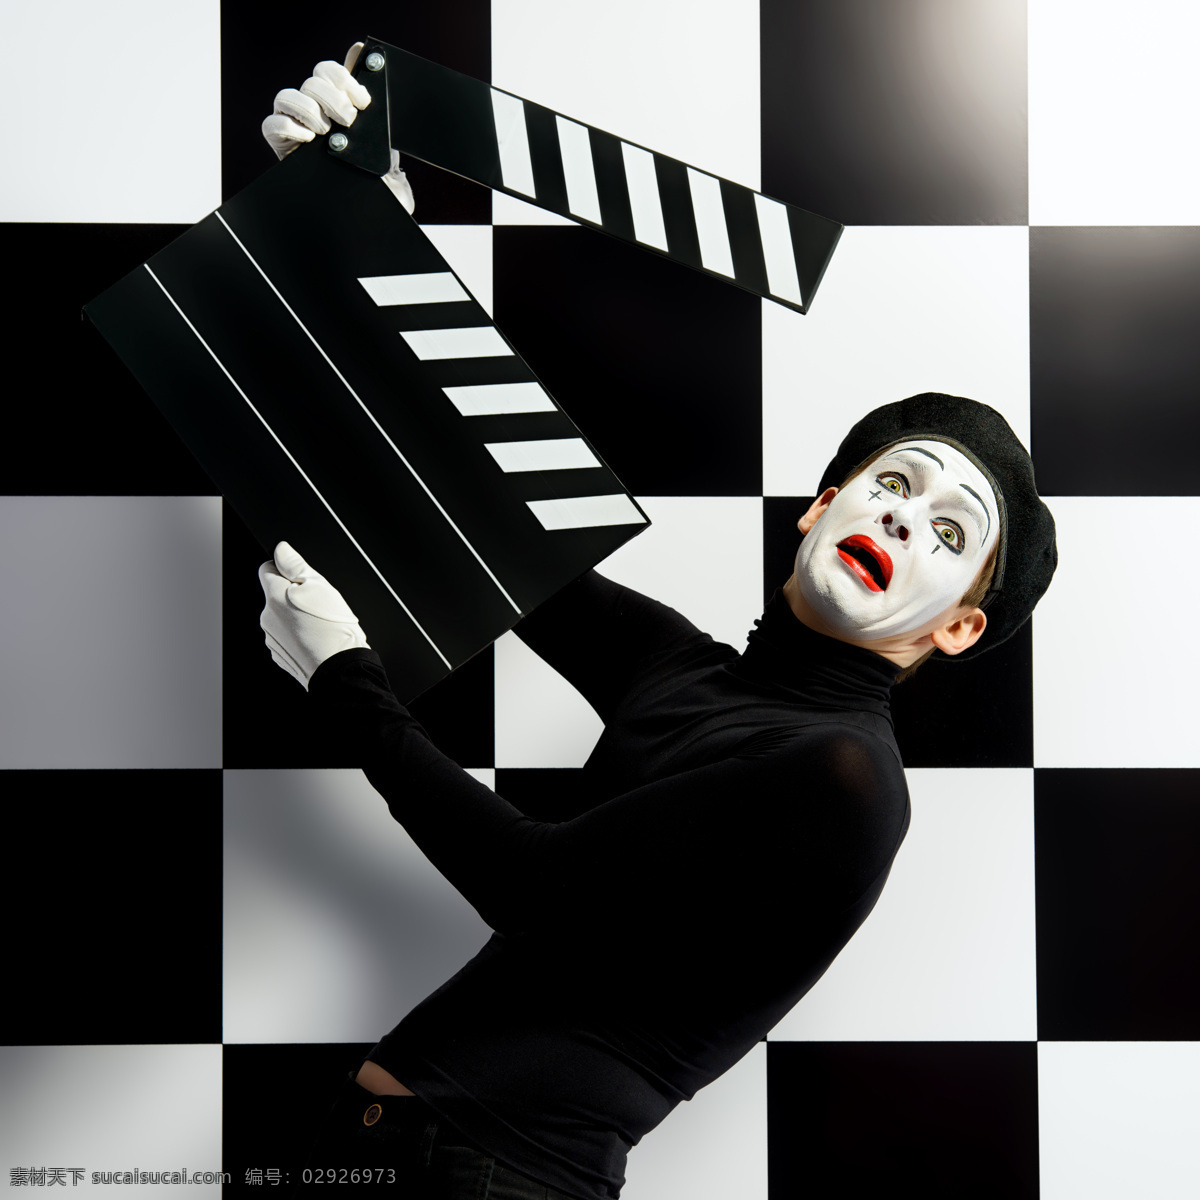 场记 板 小丑 场记板 马戏团演员 滑稽演员 男性 男人 生活人物 人物图片